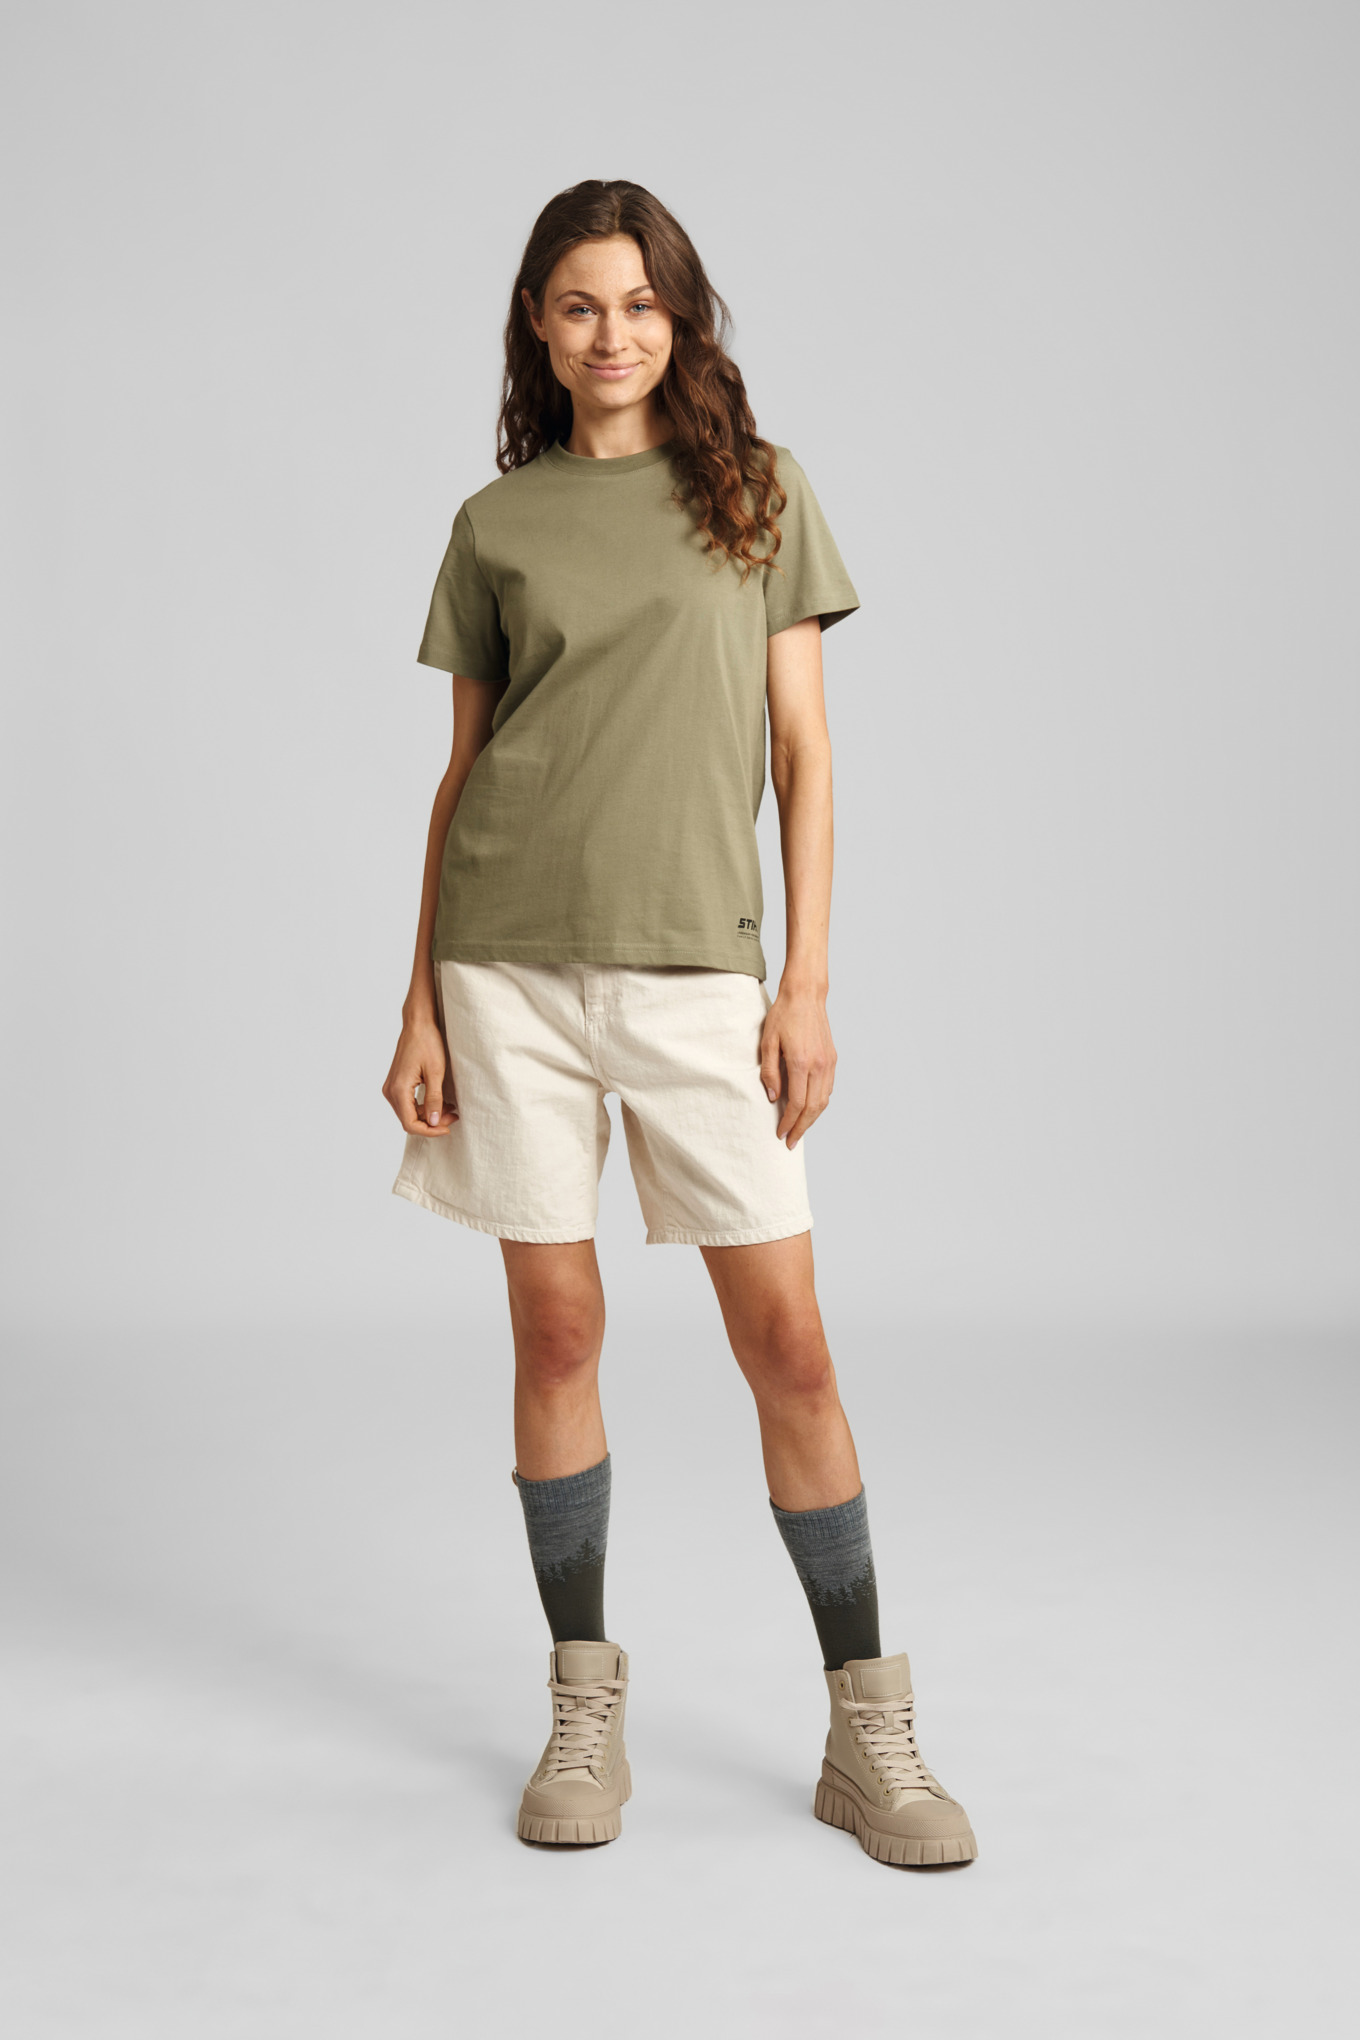 T-Shirt Damen SUSTAINABLE BASIC Grün